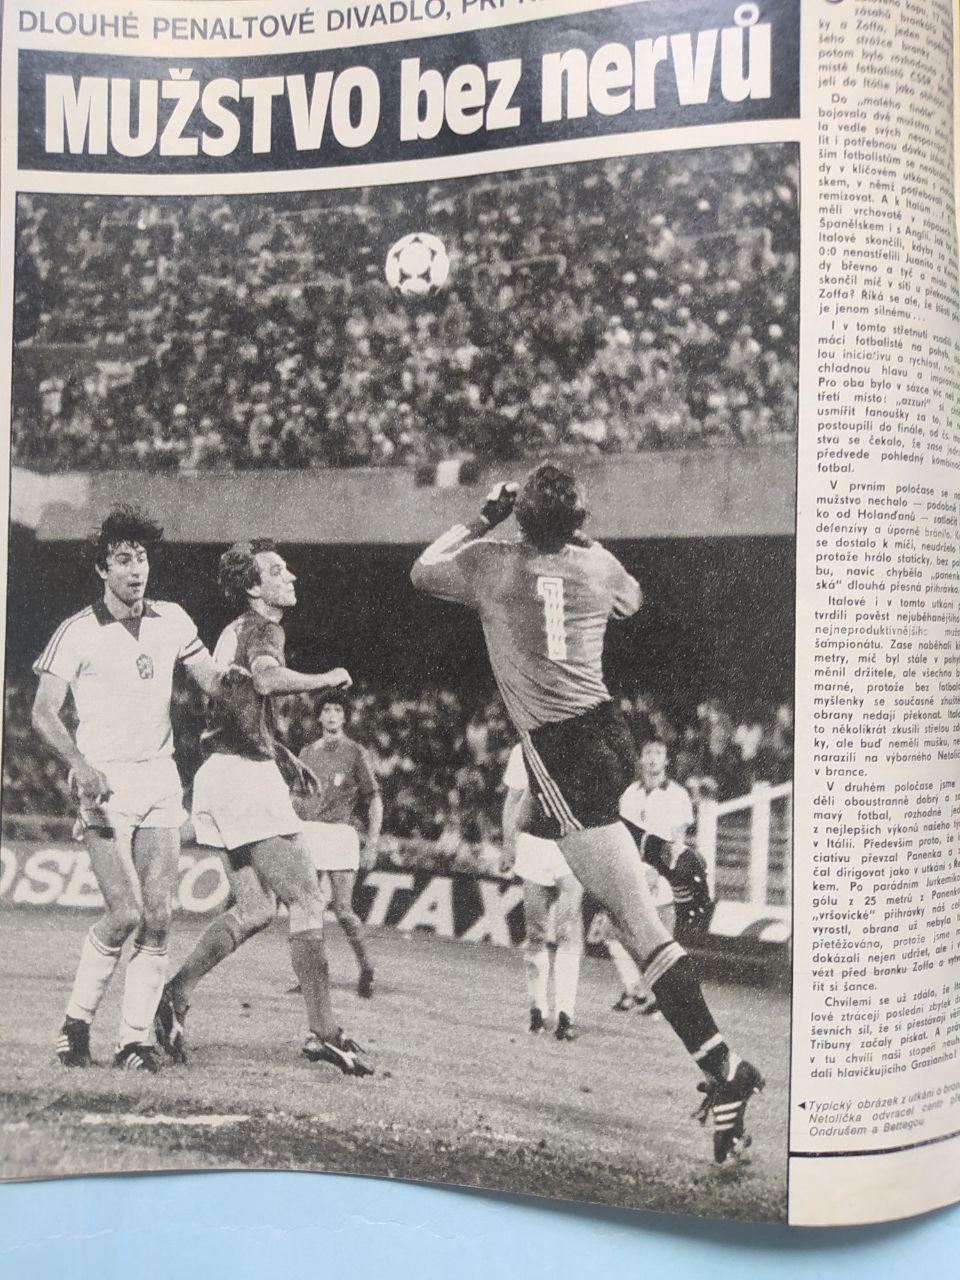 Спецвыпуск Старт и Стадион Чехия № 28 за 1980 г. ЧЕ футбол 1980 год в Италии 3